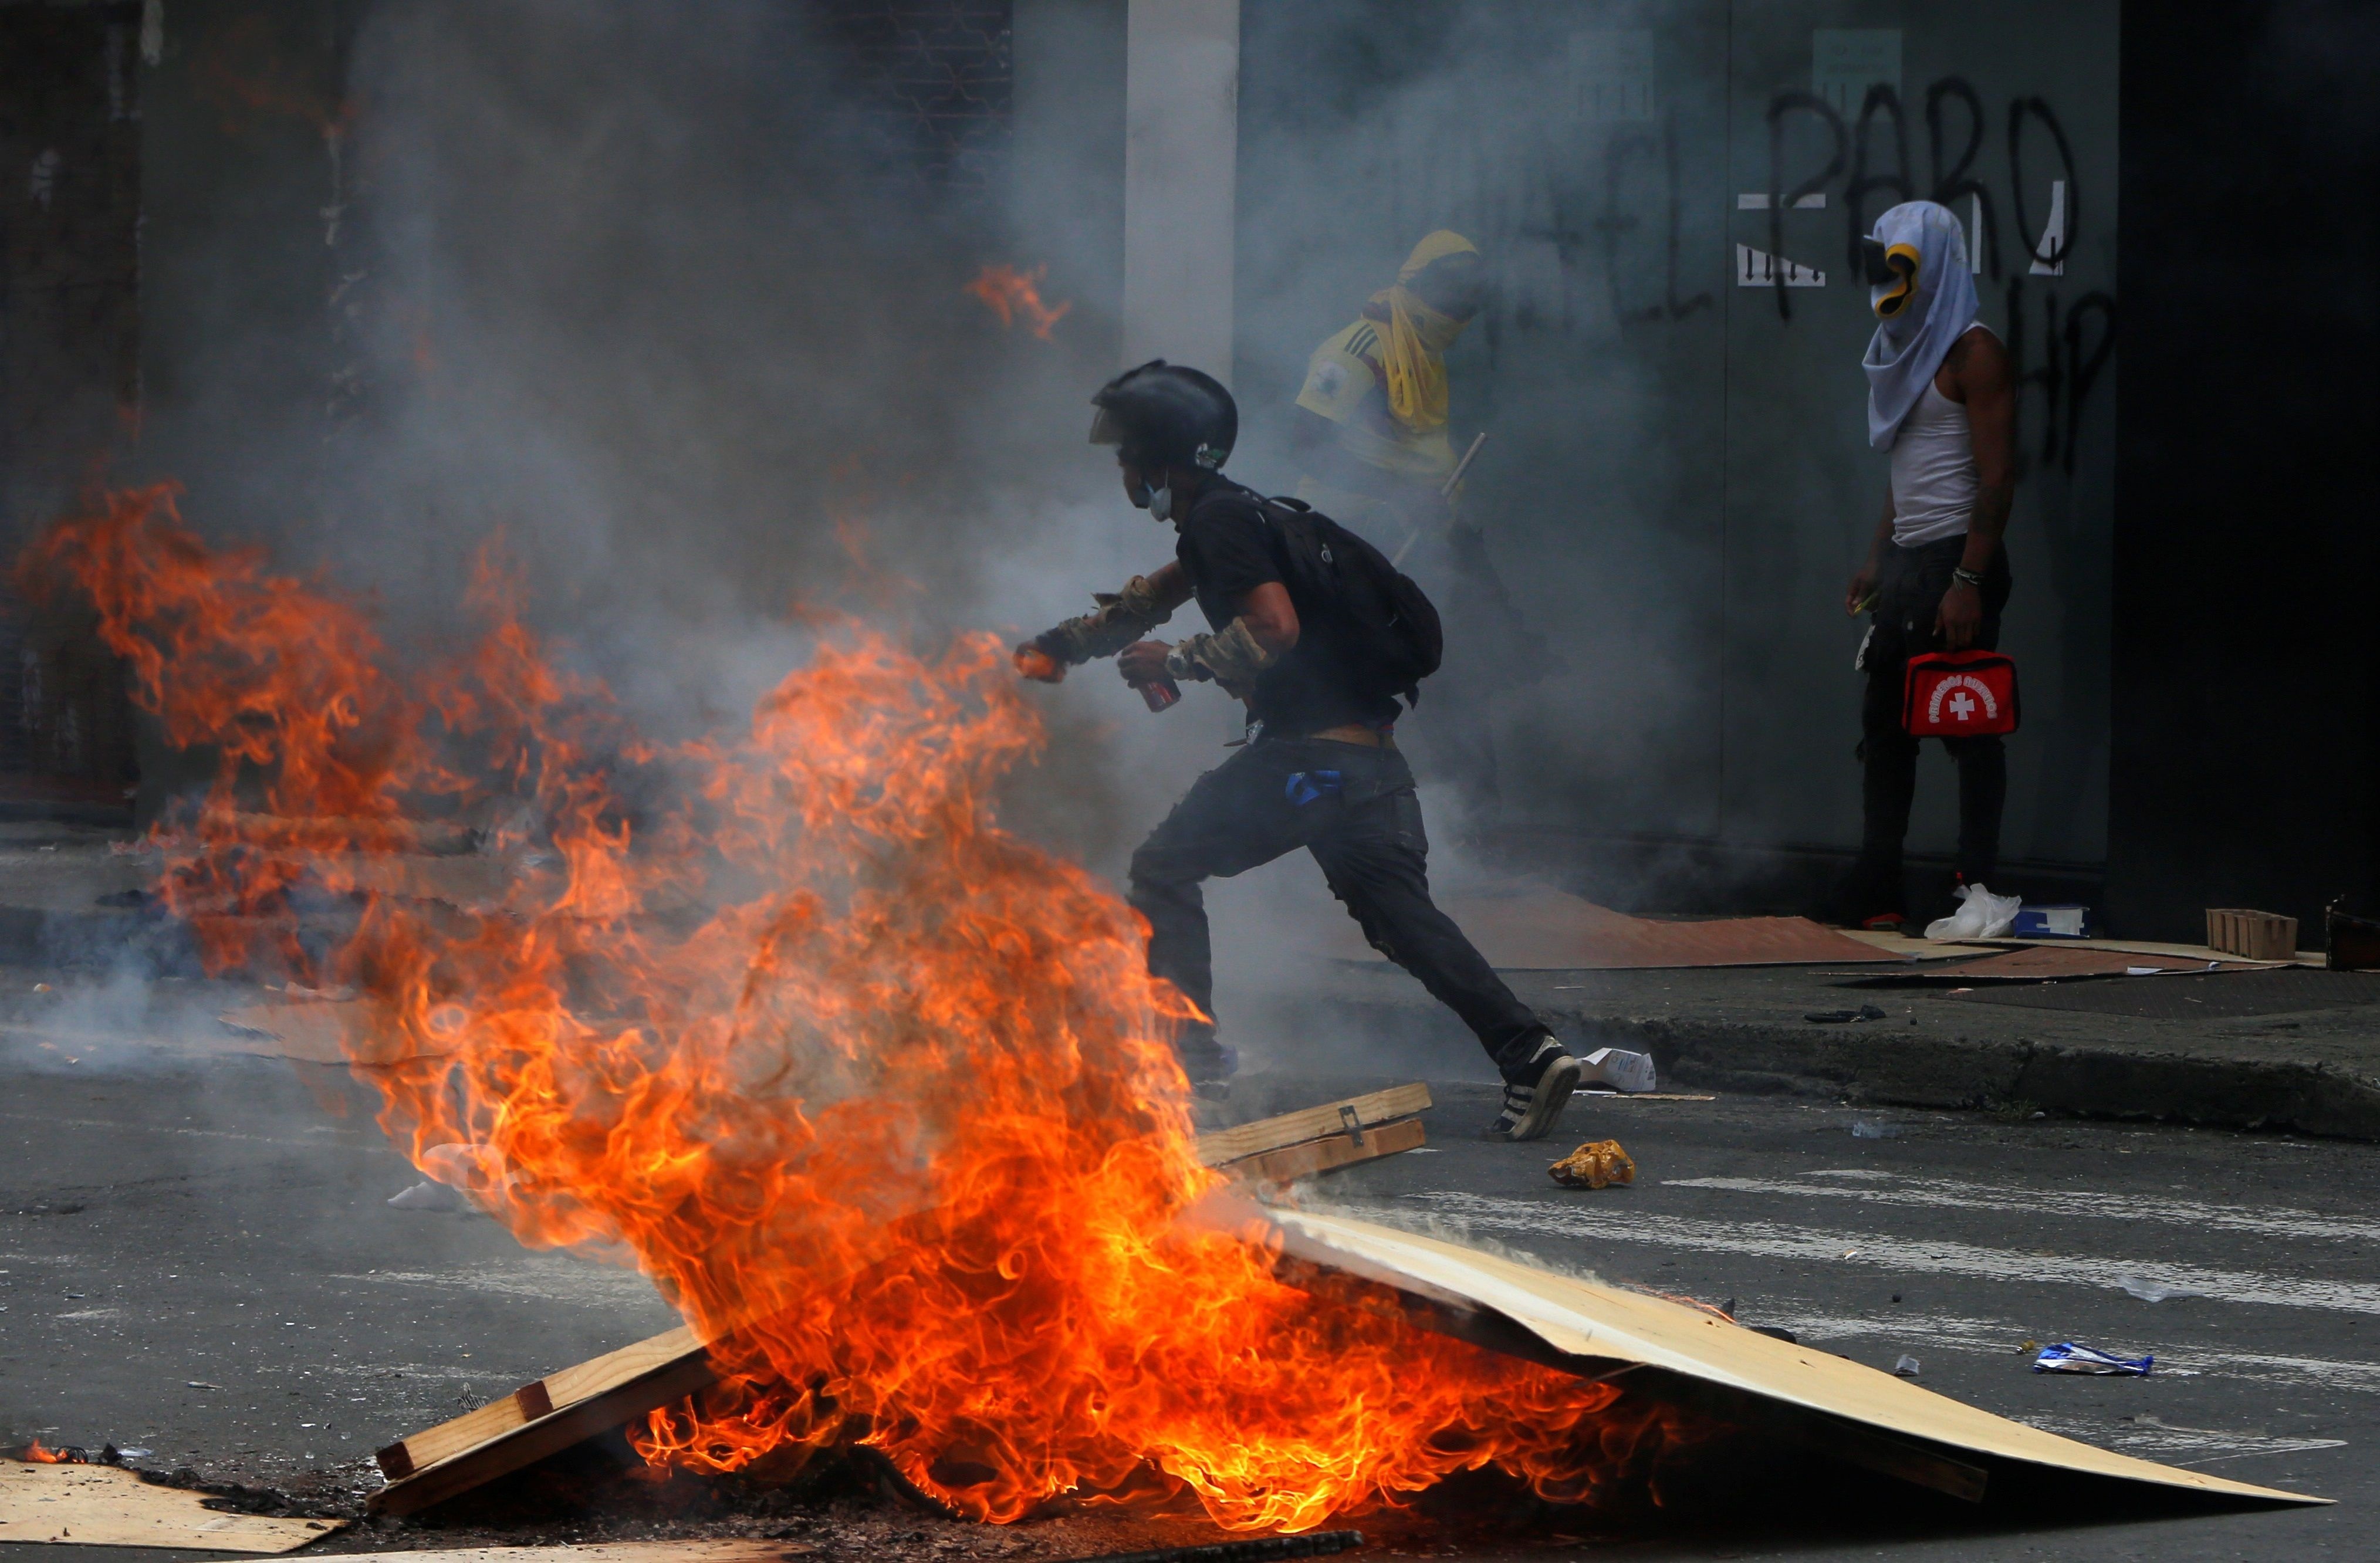 Al menos diez venezolanos detenidos por vandalismo durante protestas en Cali (Video)